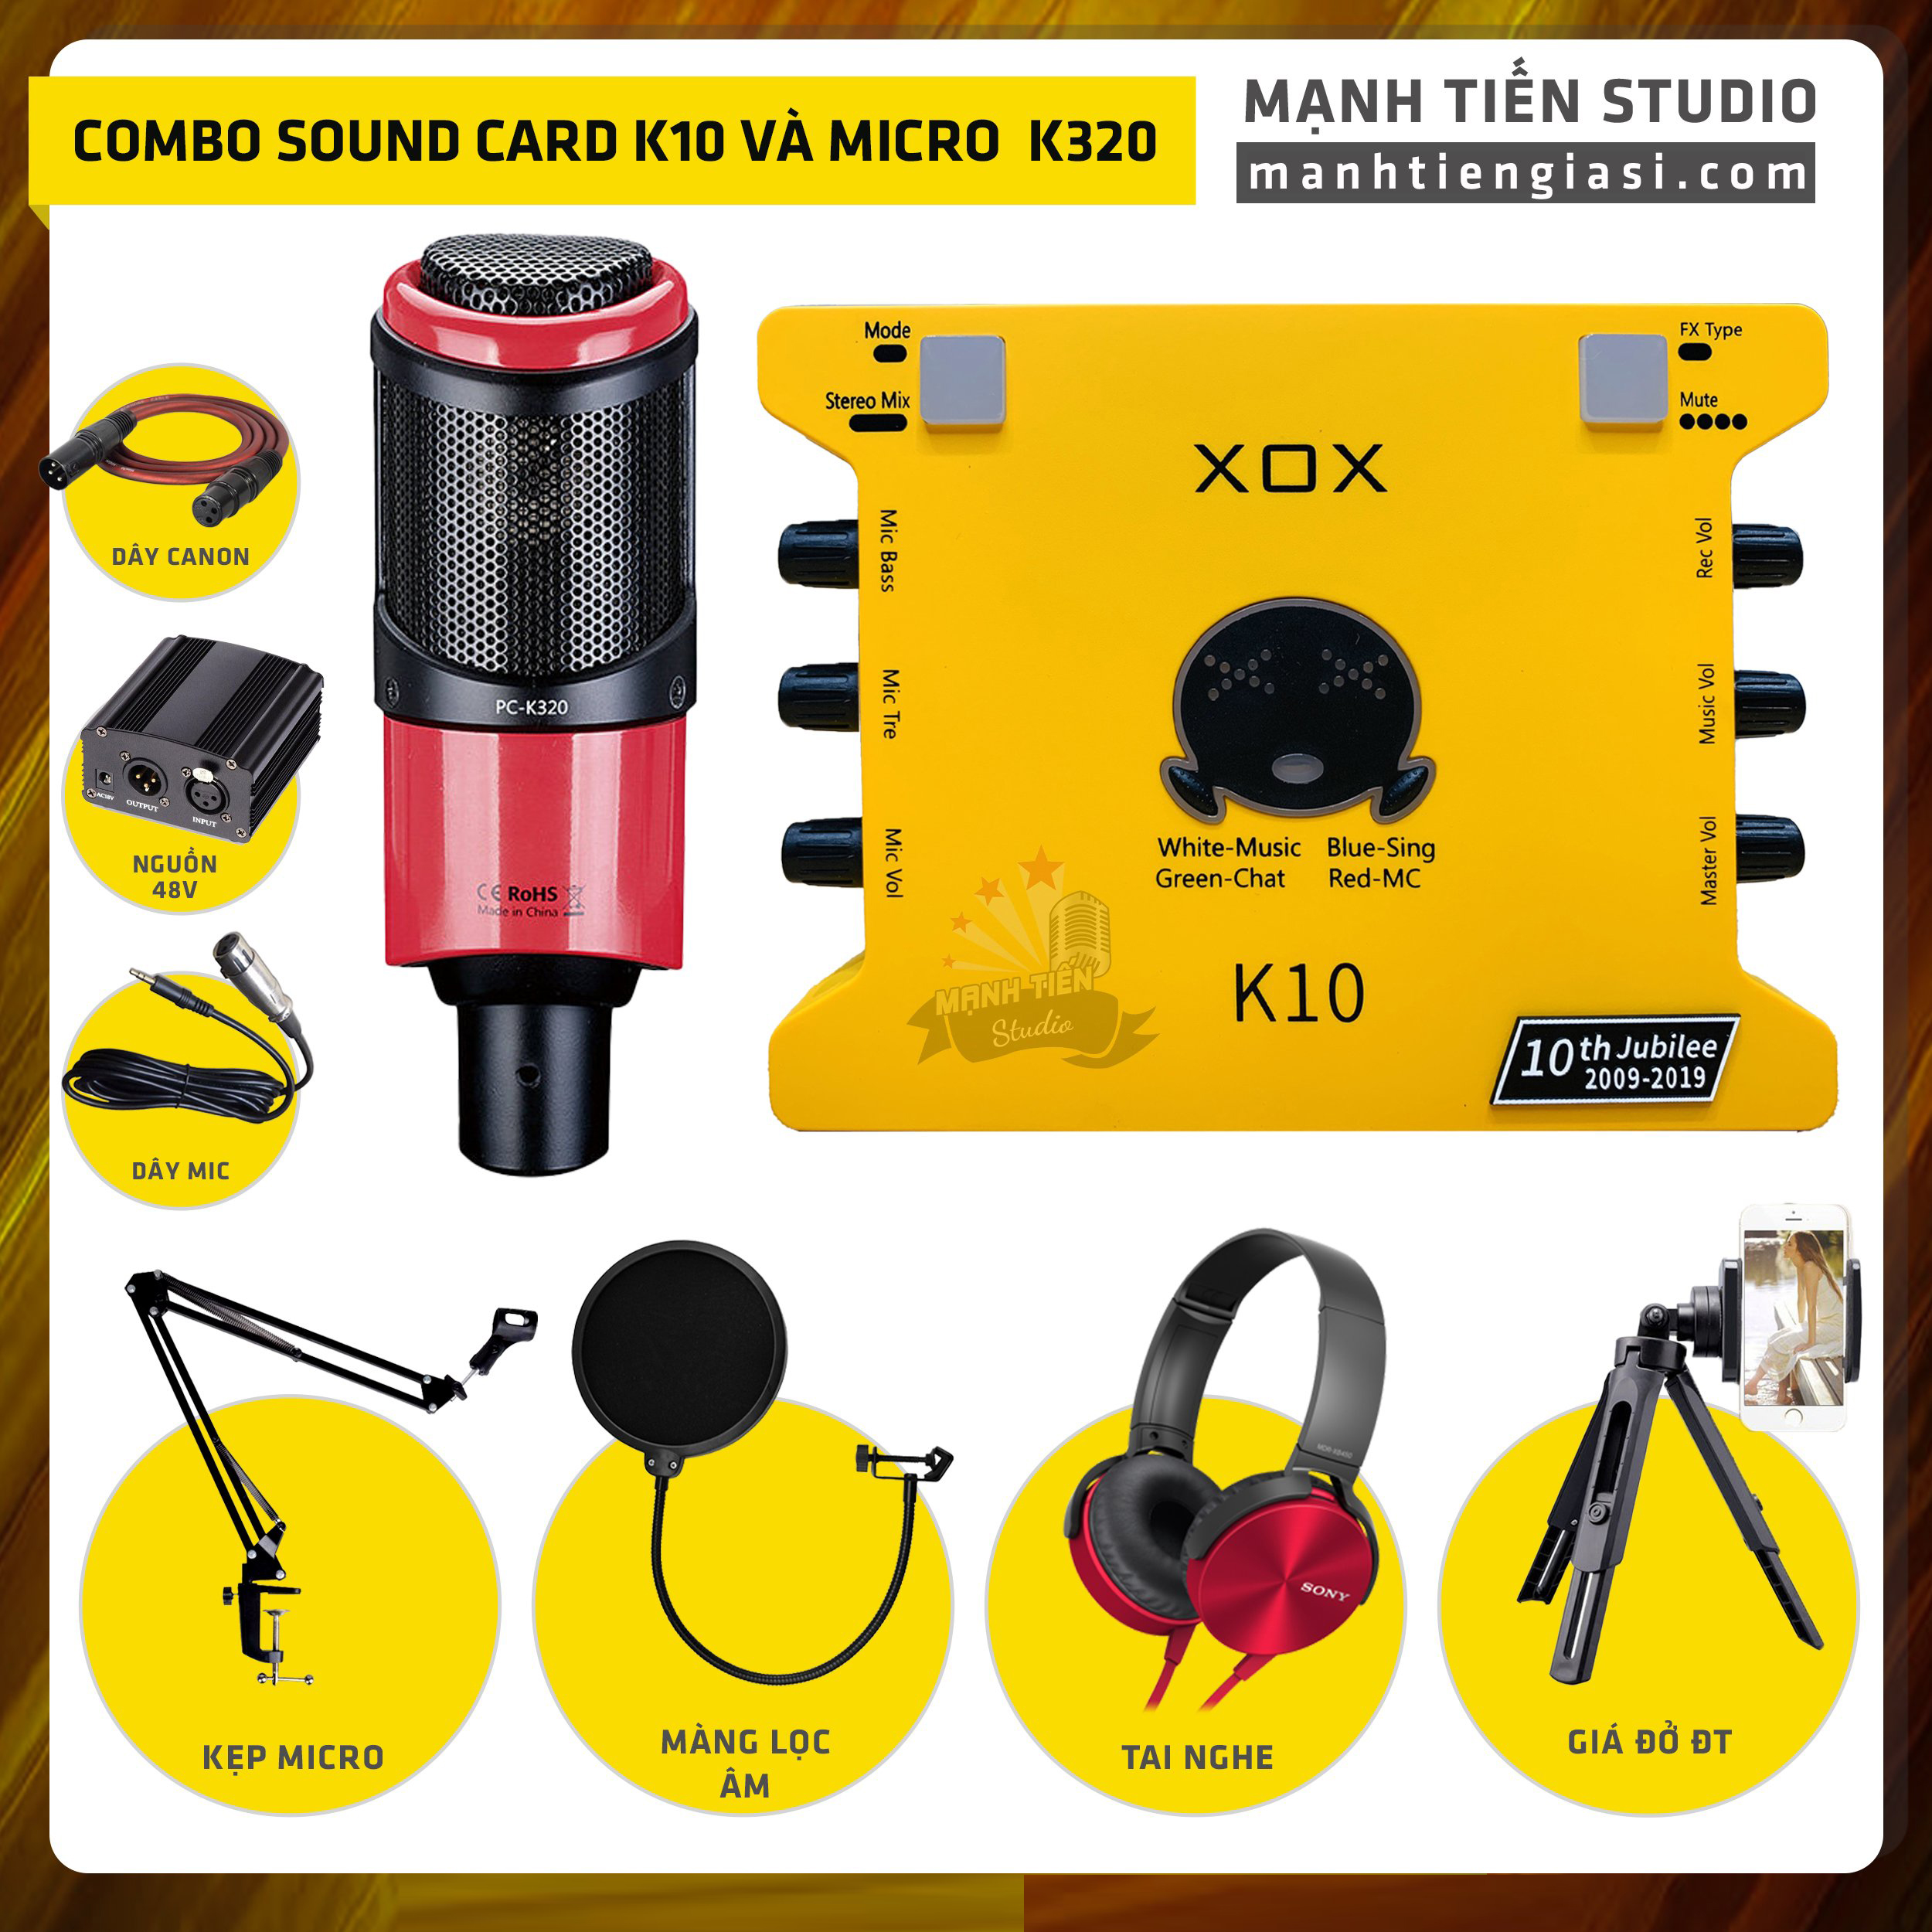 Combo thu âm, livestream Micro TakStar PC-K320, Sound card XOX K10 Jubilee - Kèm full phụ kiện nguồn 48V, kẹp micro, màng lọc, tai nghe, giá đỡ ĐT - Hỗ trợ thu âm, karaoke online chuyên nghiệp - Hàng nhập khẩu